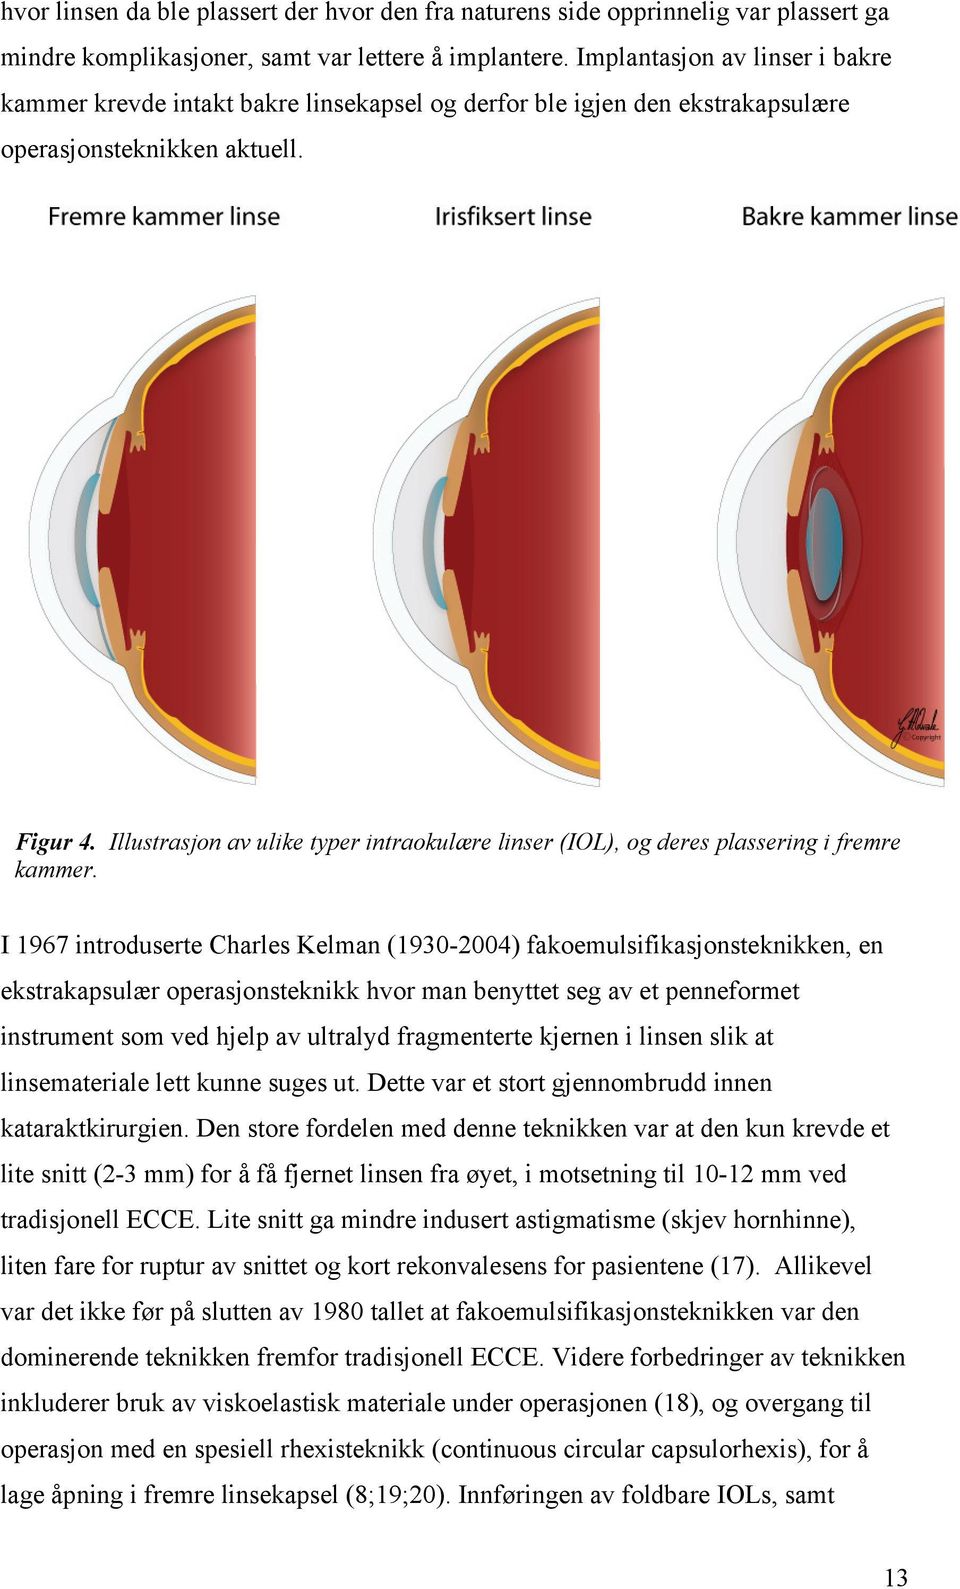 Illustrasjon av ulike typer intraokulære linser (IOL), og deres plassering i fremre kammer.